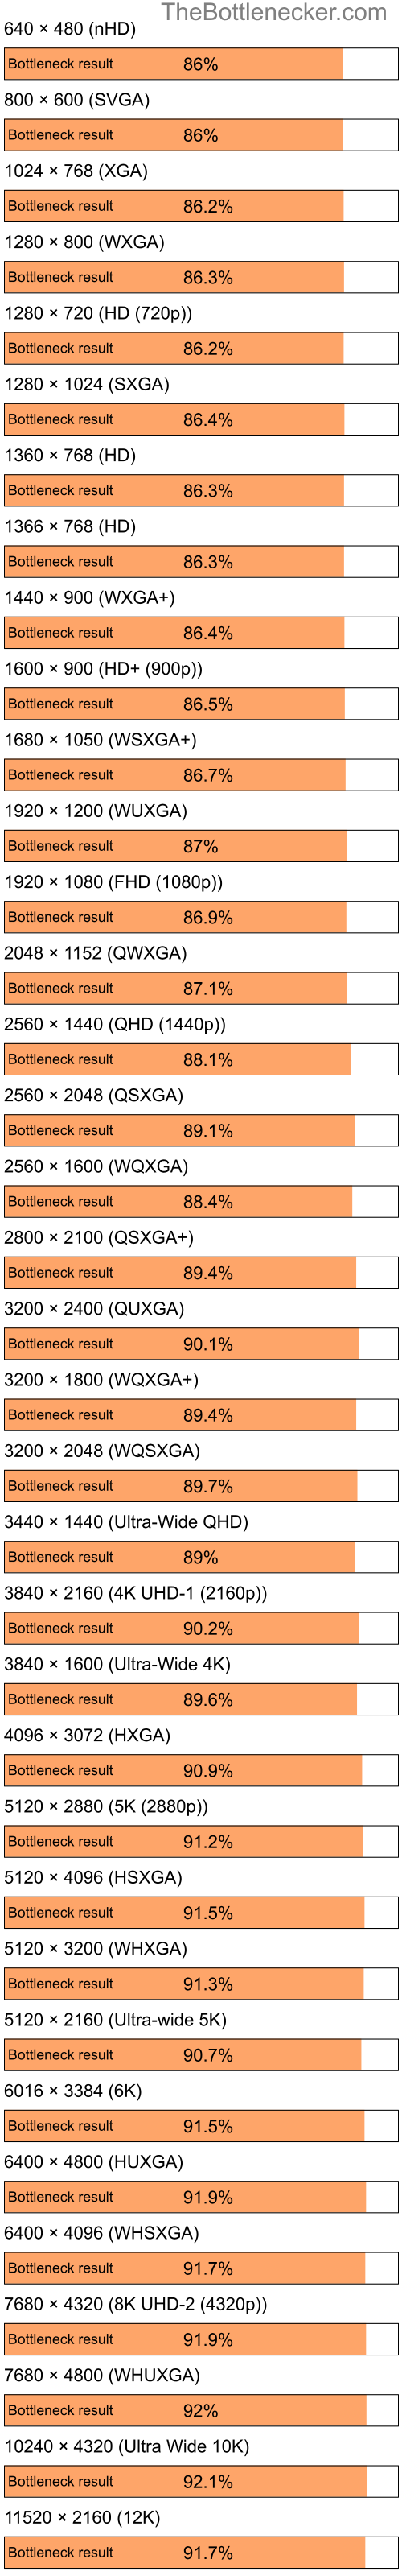 Bottleneck results by resolution for Intel Celeron and NVIDIA GeForce FX 5200 in General Tasks